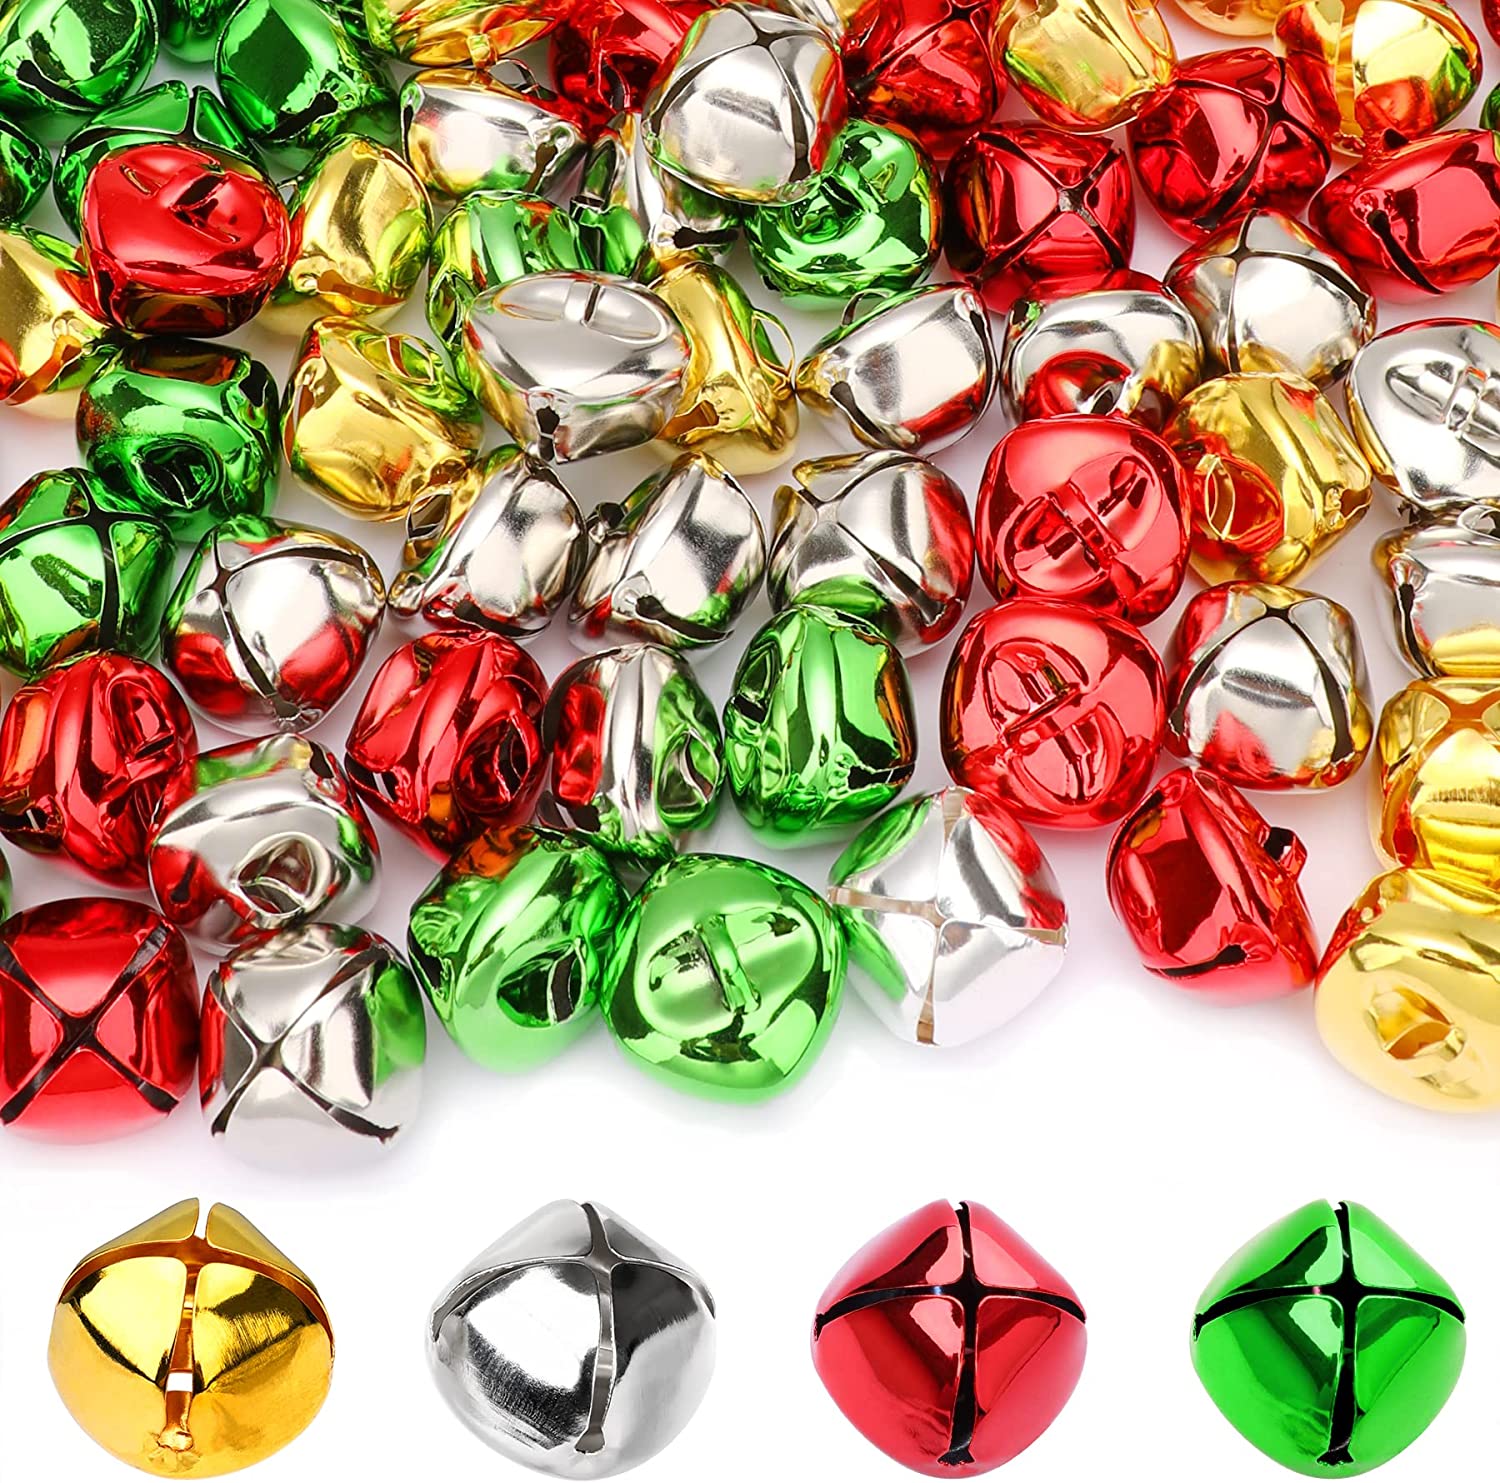 Mr. Pen- Jingle Bells, 1 Inch, Silver, 50 Pack, Jingle Bells for Crafts,  Craft Bells, Jingle Bells Bulk, Silver Jingle Bells, Bells for Wreaths, 1  inch Jingle Bells.